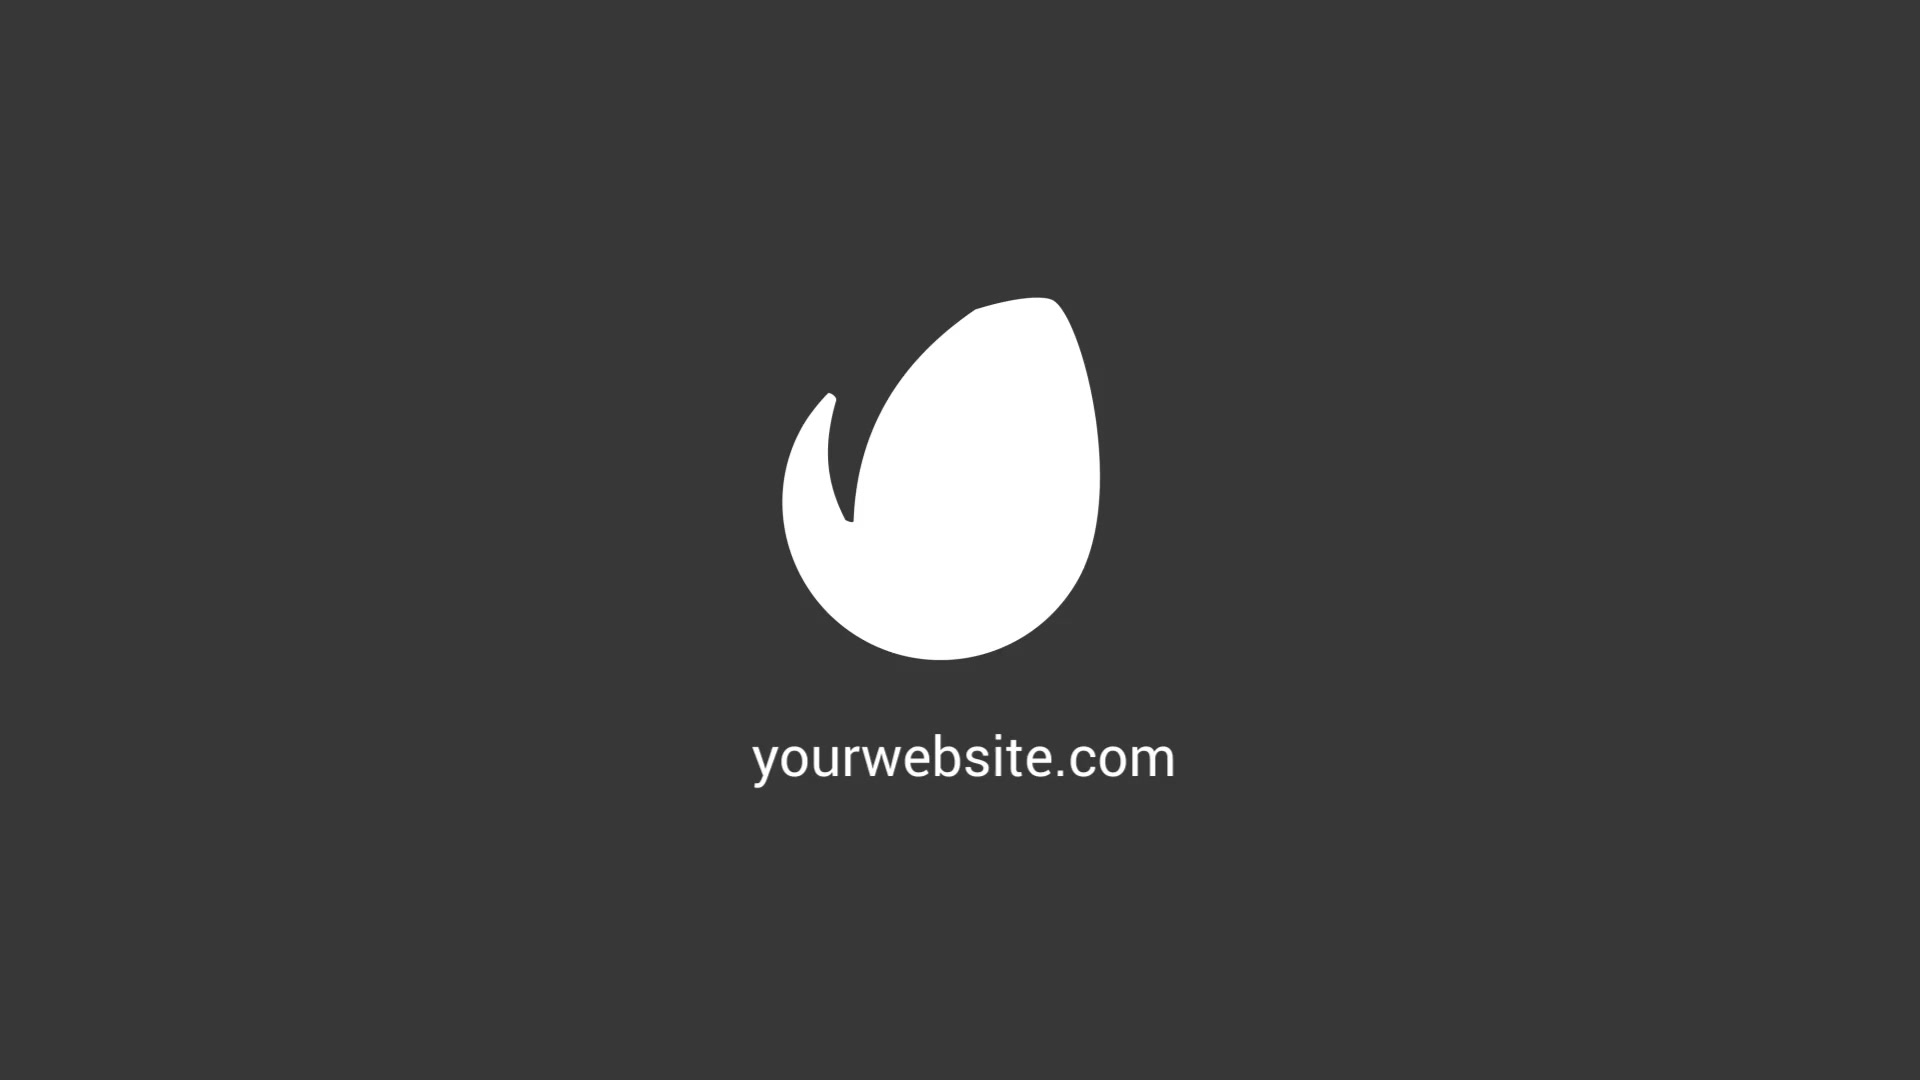 Web Search Logo Reveal | Premiere Pro Template Videohive 26048058 Premiere Pro Image 7